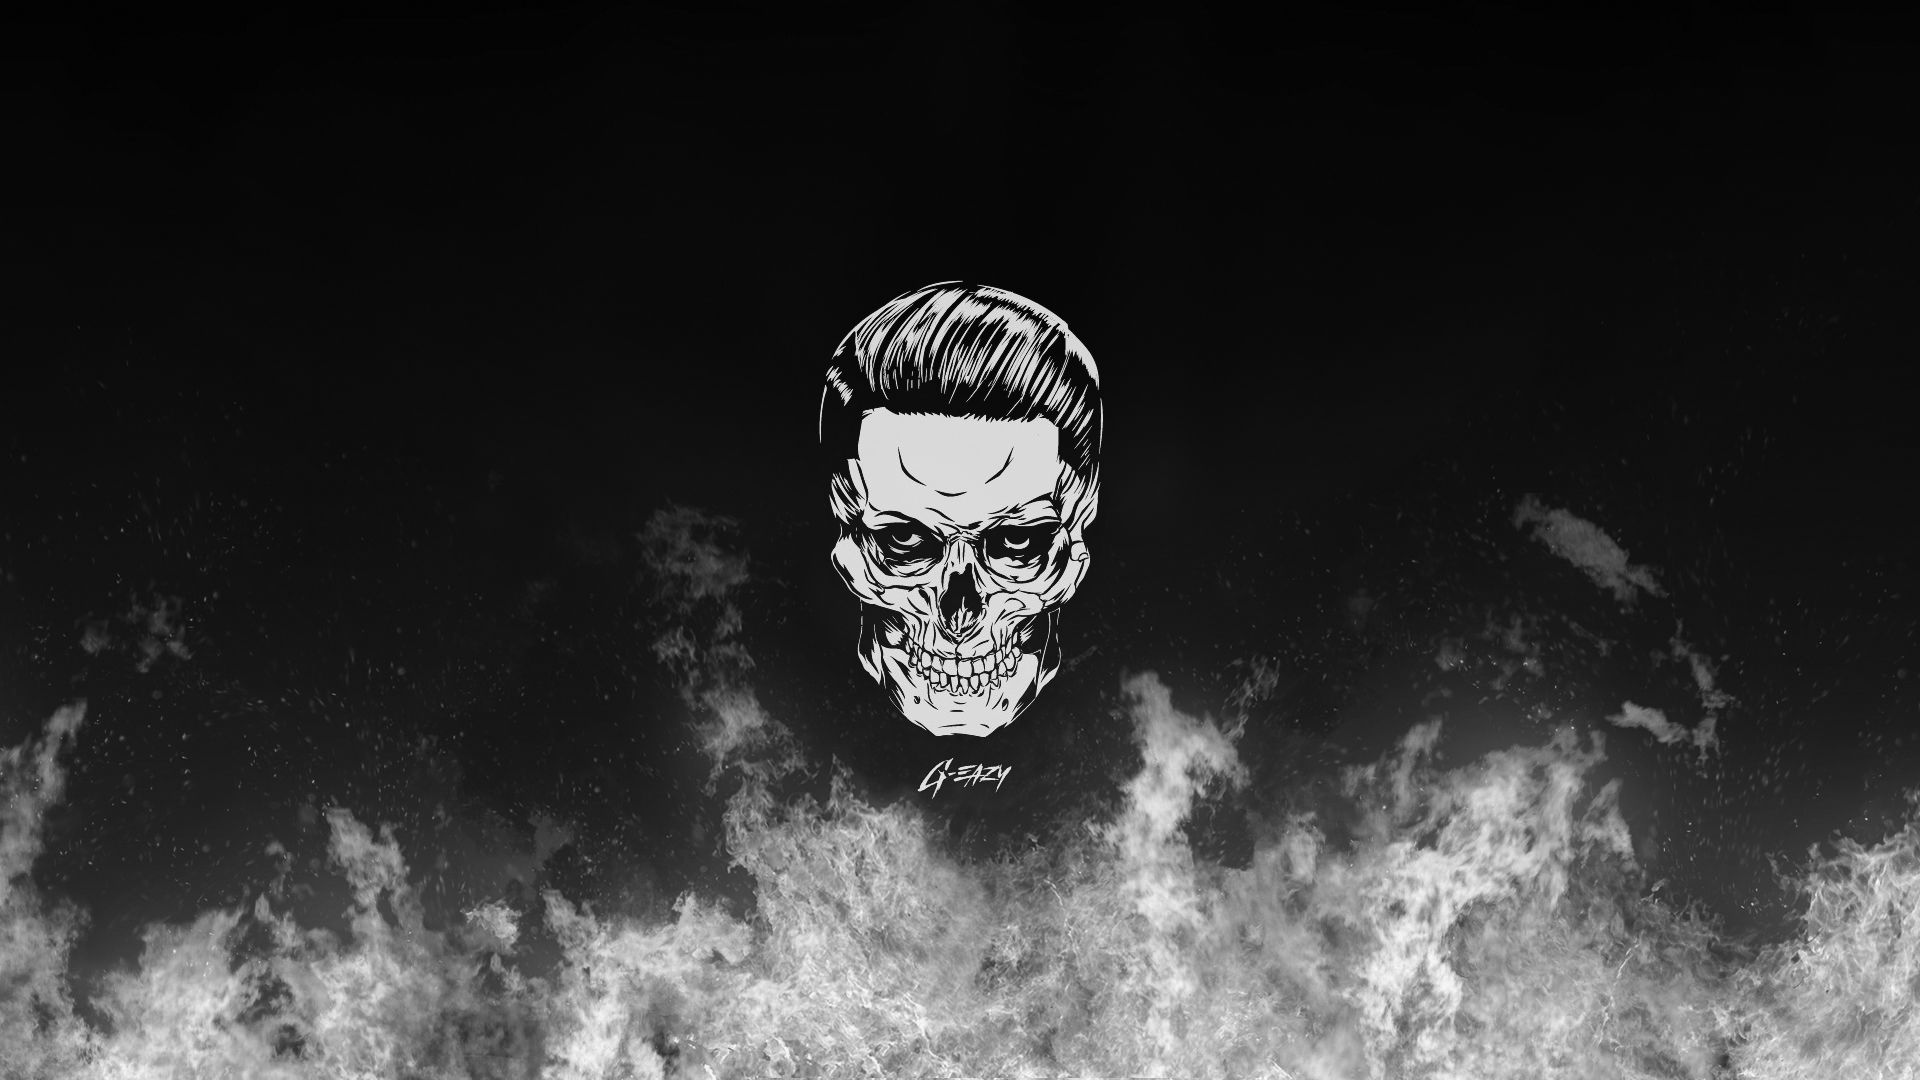 G Eazy Skull [1920x1080] [OC]